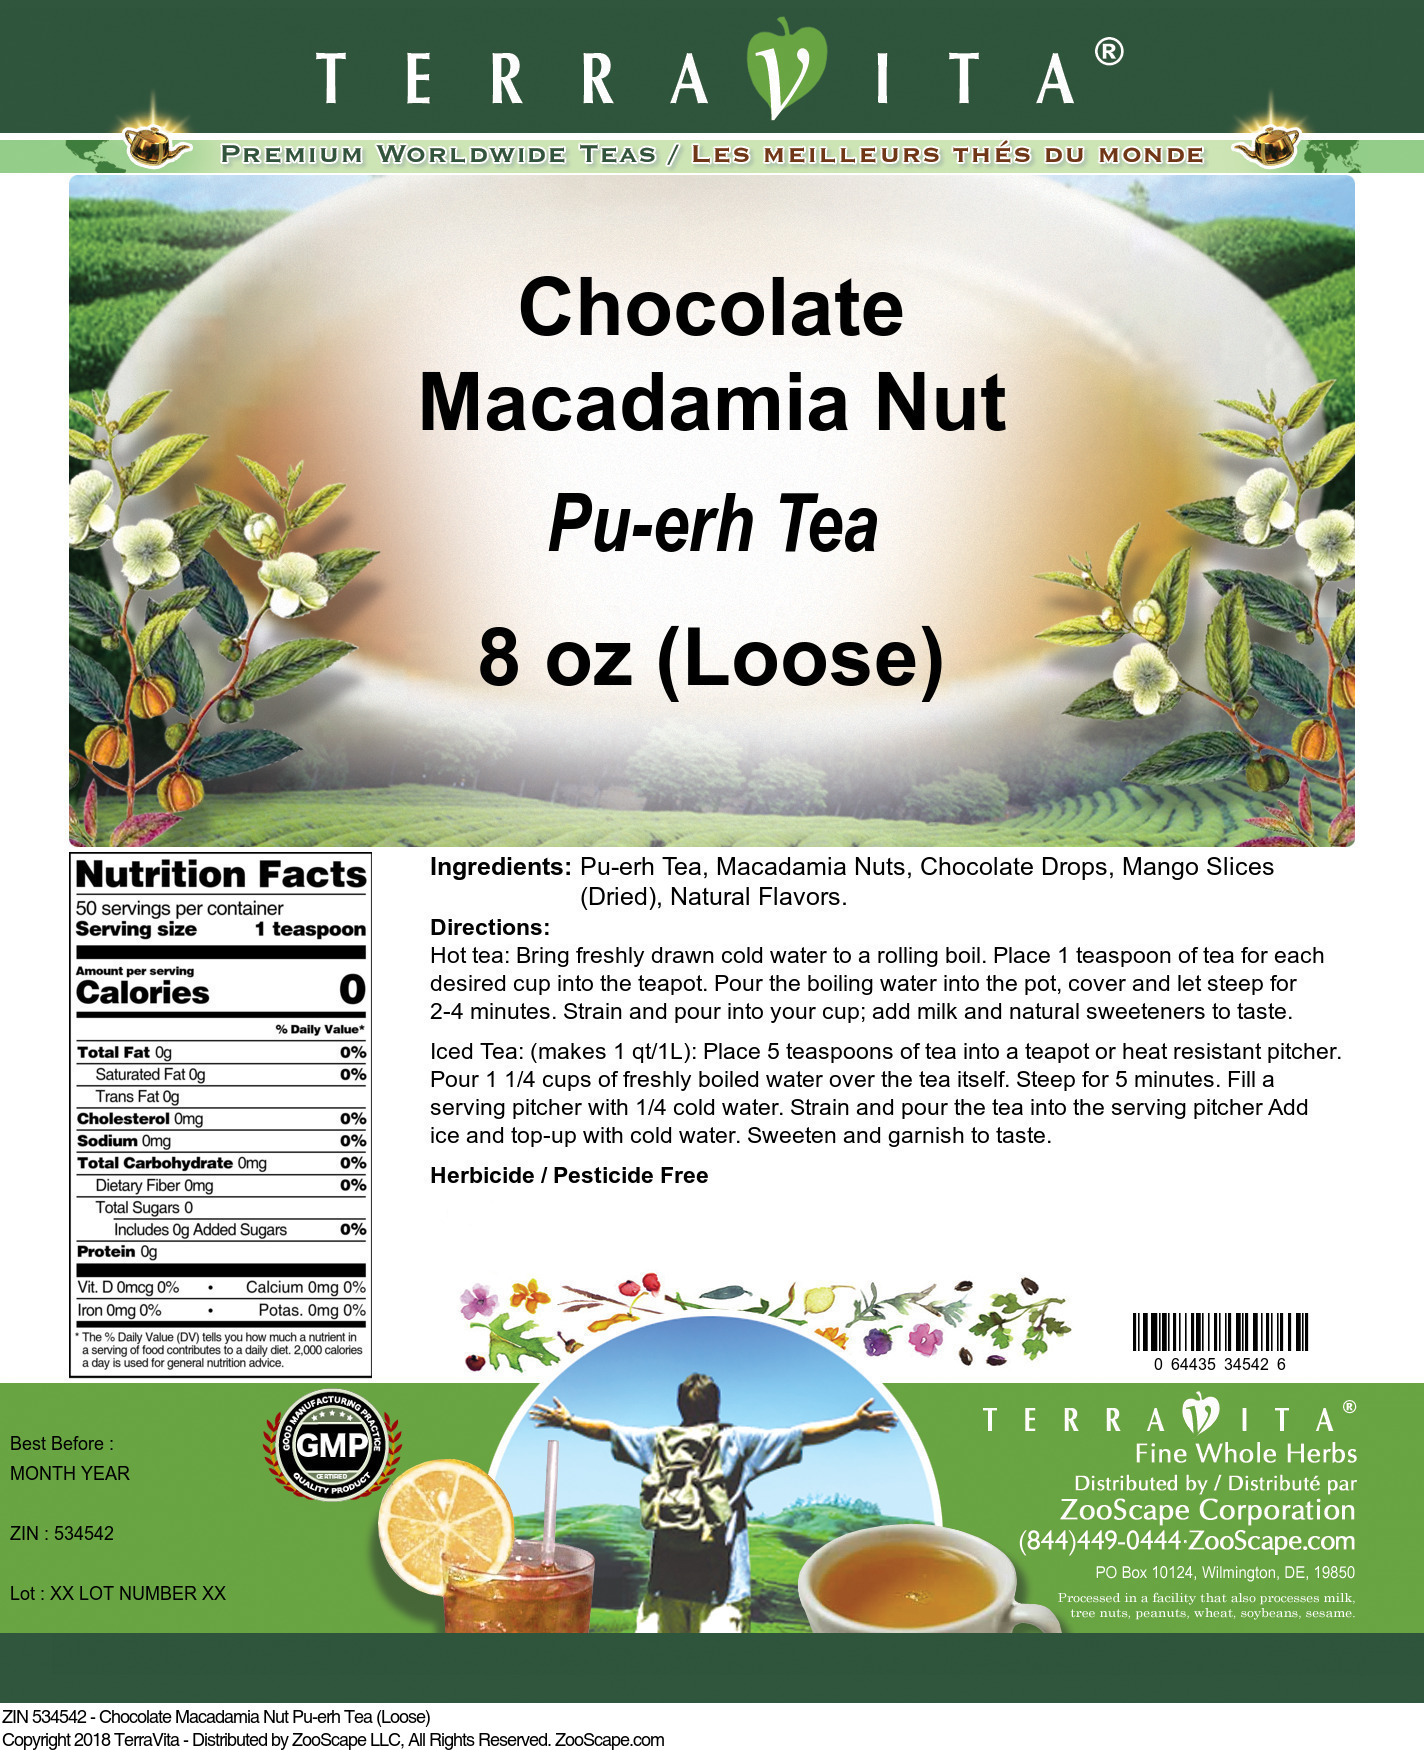 Chocolate Macadamia Nut Pu-erh Tea (Loose) - Label